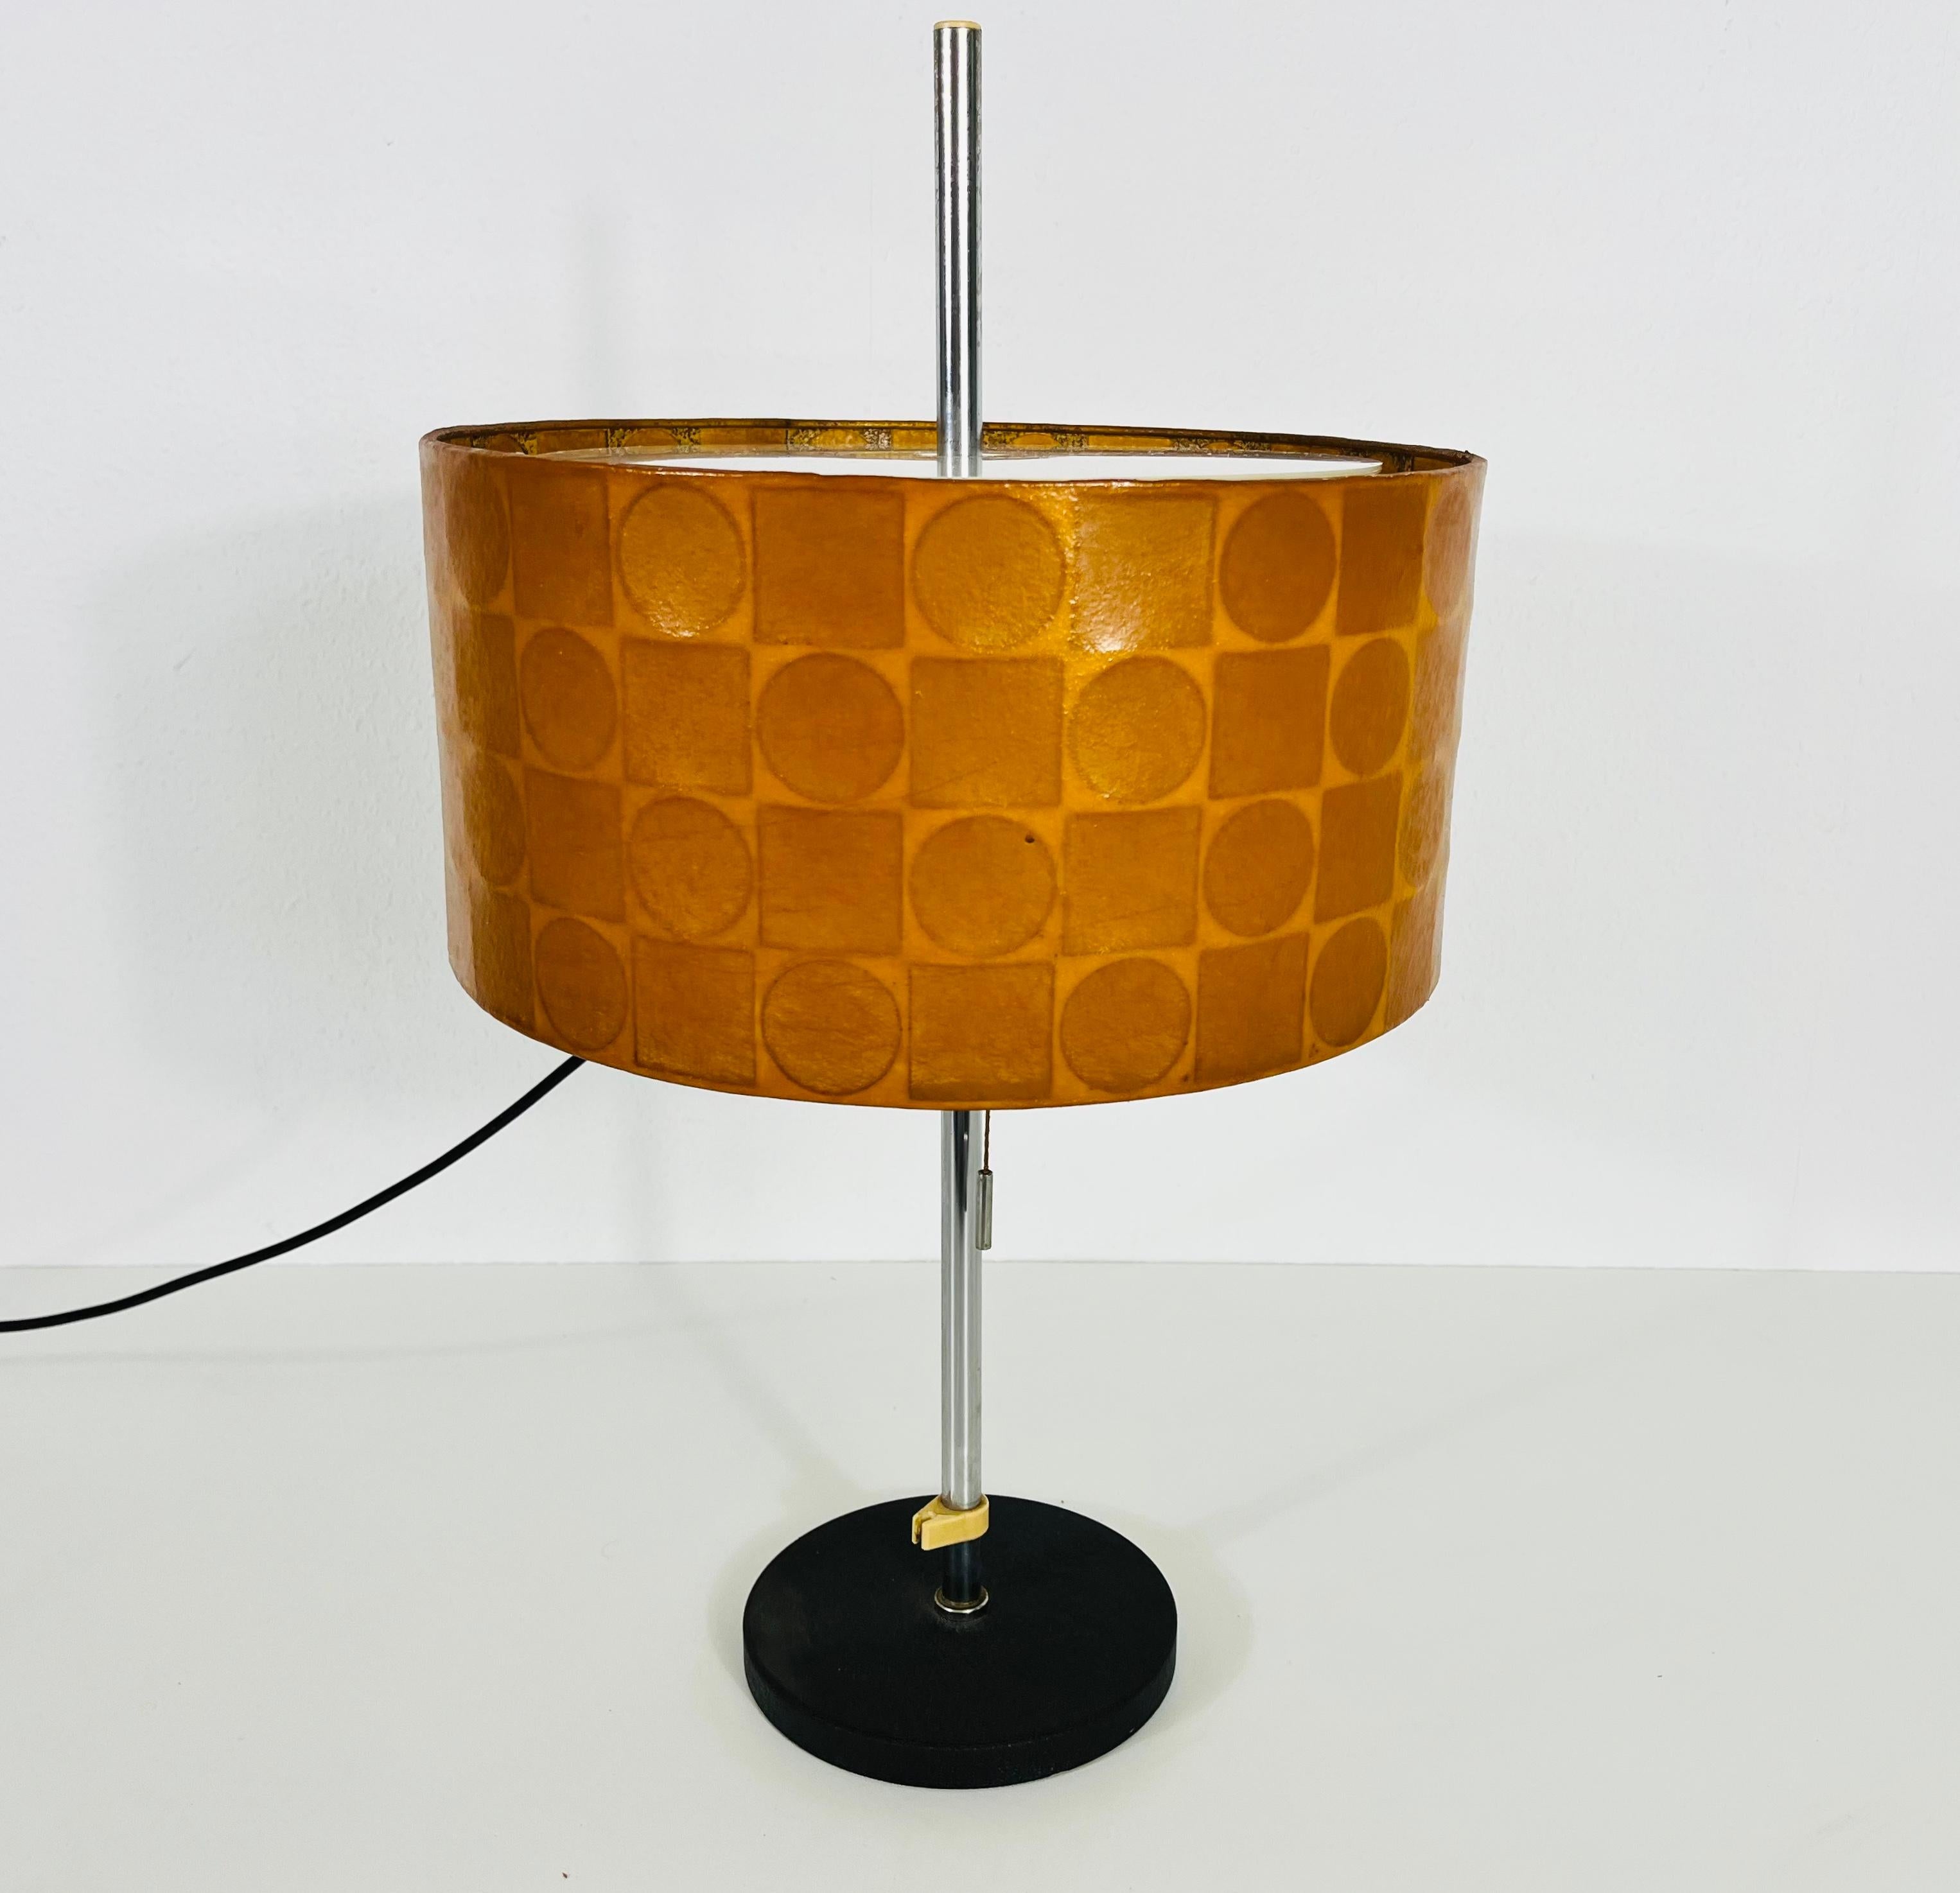 Cocoon Tischleuchte, hergestellt in Deutschland von Goldkant in den 1960er Jahren. Der Lampenschirm ist aus Kokon gefertigt und hat eine schöne Form. 

Die Leuchte benötigt eine E27 (US E26) Glühbirne. Funktioniert sowohl mit 120/220V. Guter alter